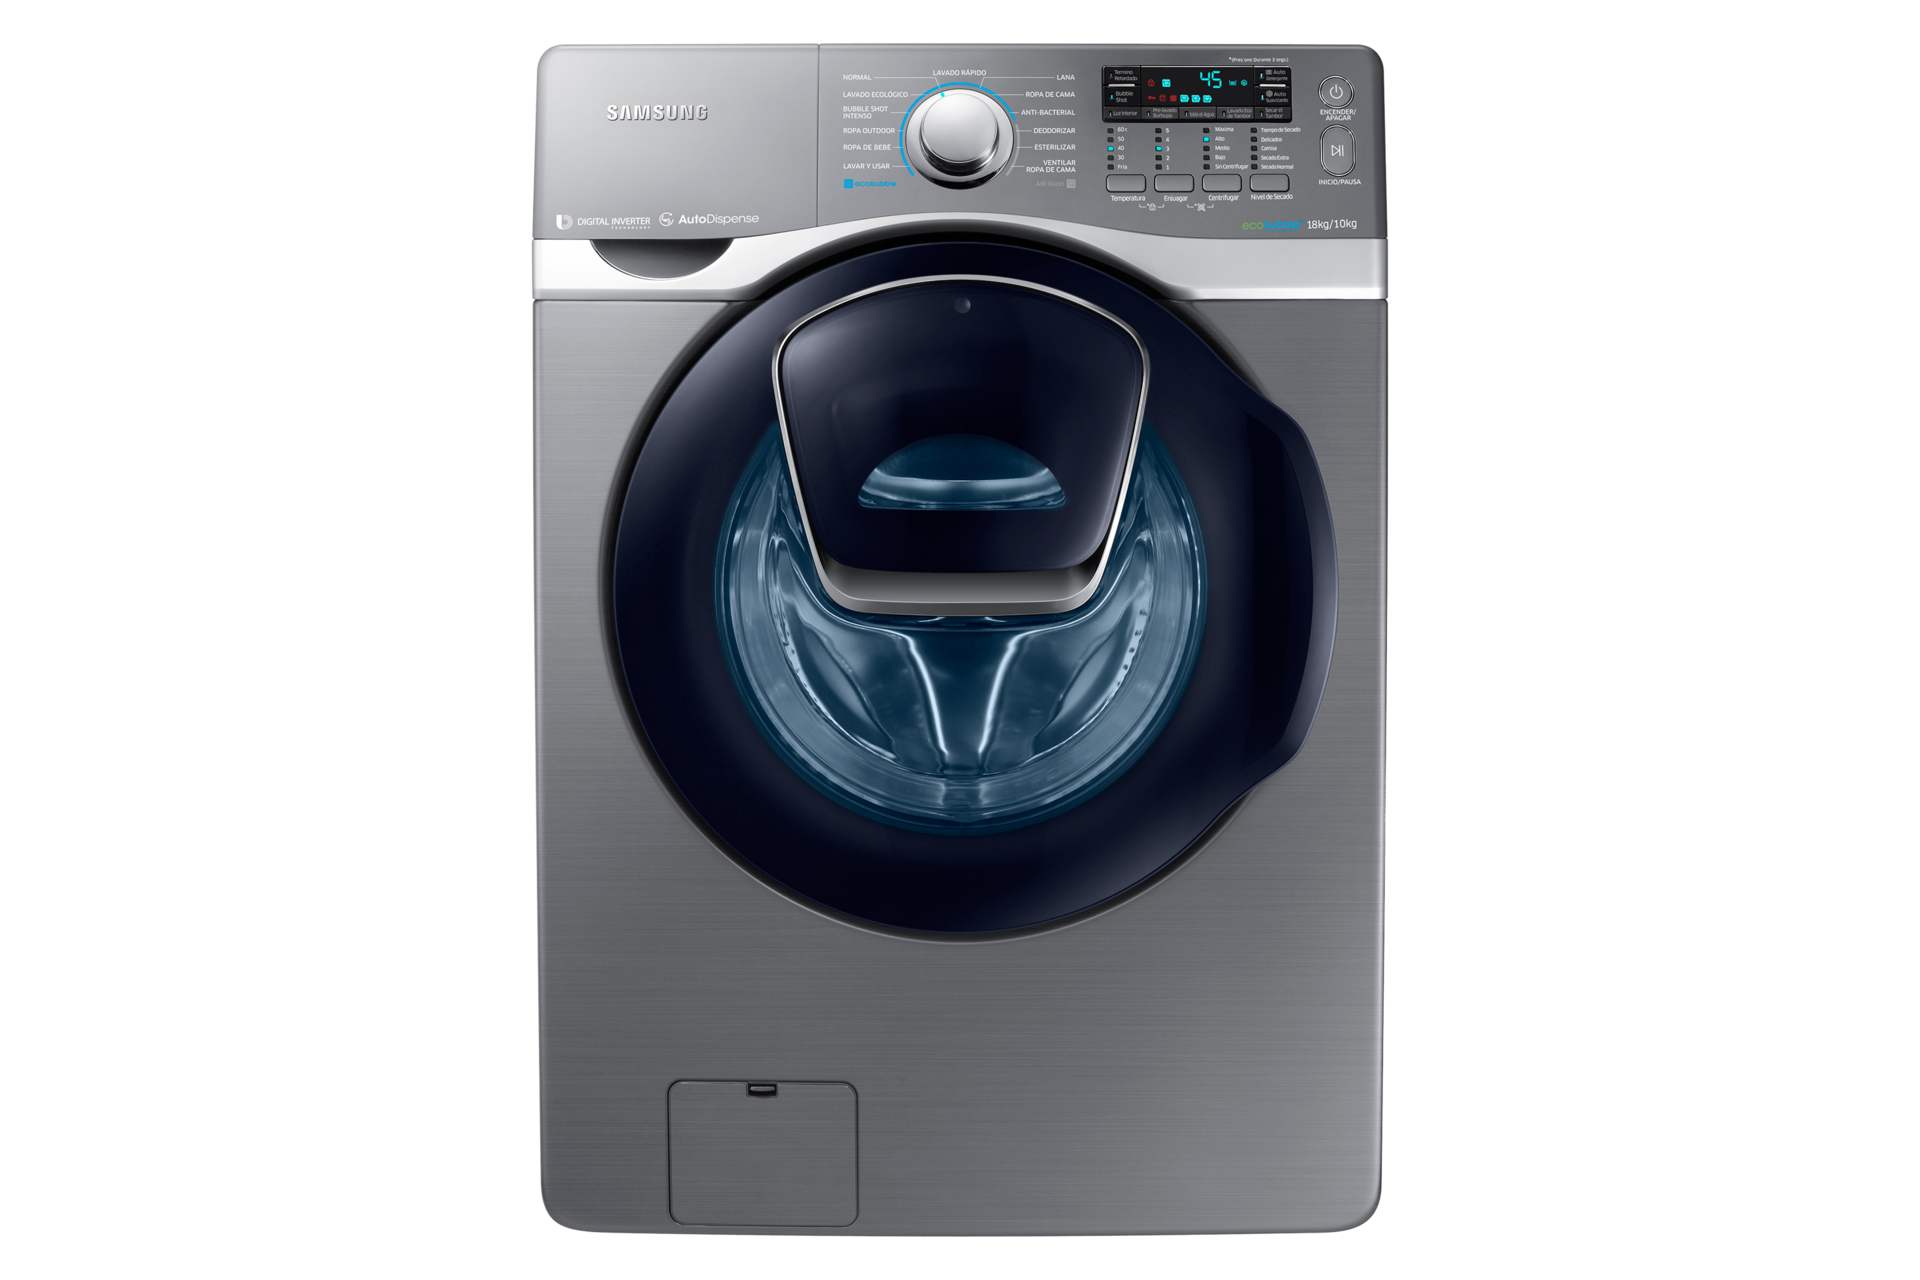 Cómo instalar tu lavadora Samsung?